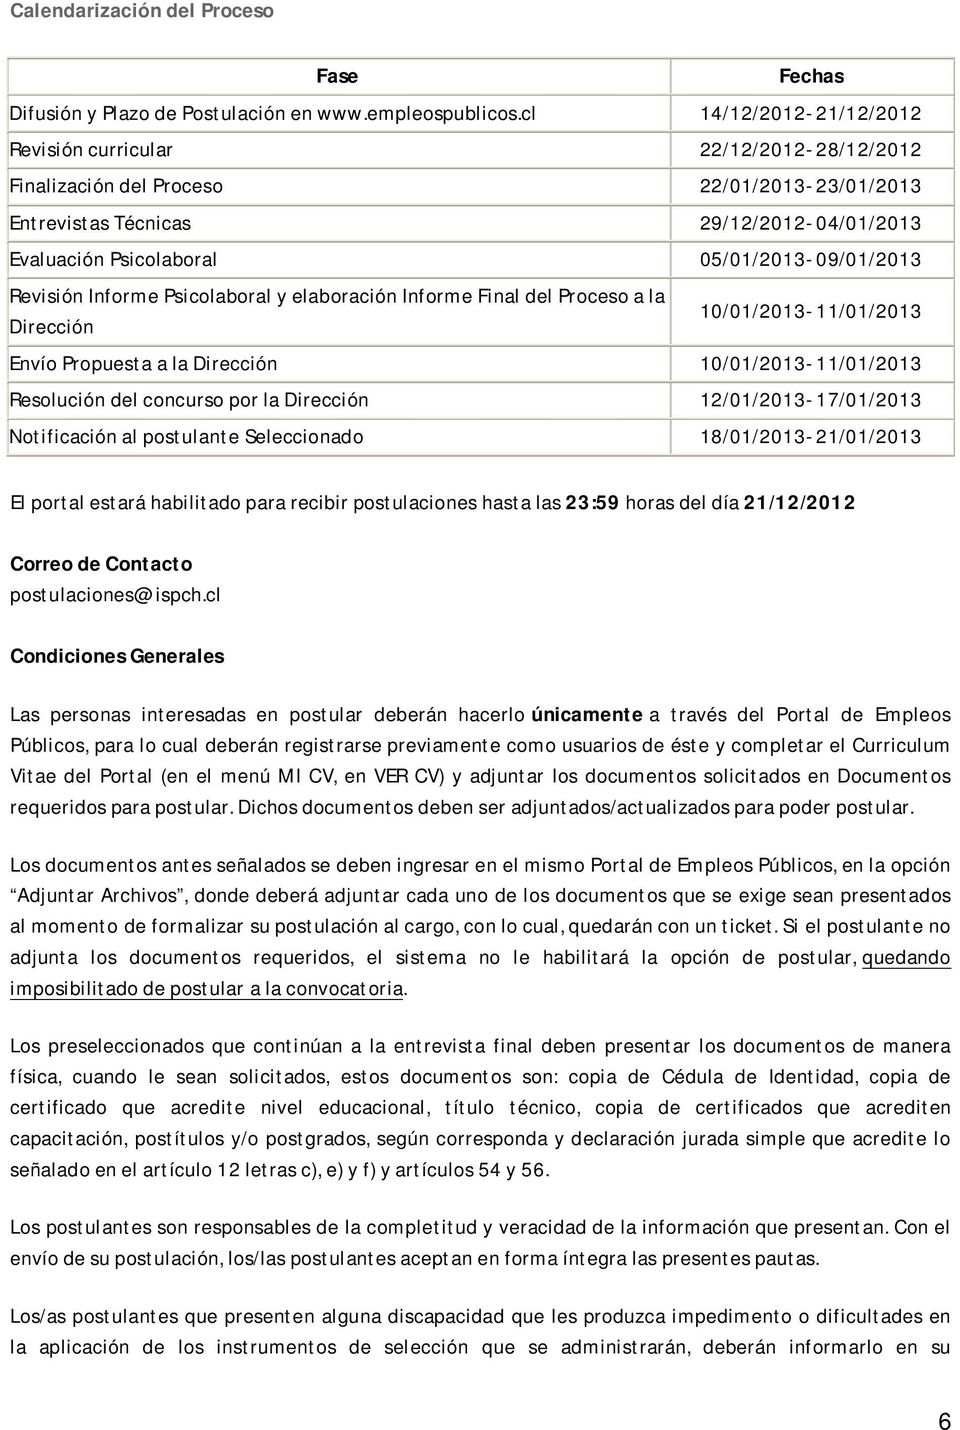 05/01/2013-09/01/2013 Revisión Informe Psicolaboral y elaboración Informe Final del Proceso a la Dirección 10/01/2013-11/01/2013 Envío Propuesta a la Dirección 10/01/2013-11/01/2013 Resolución del